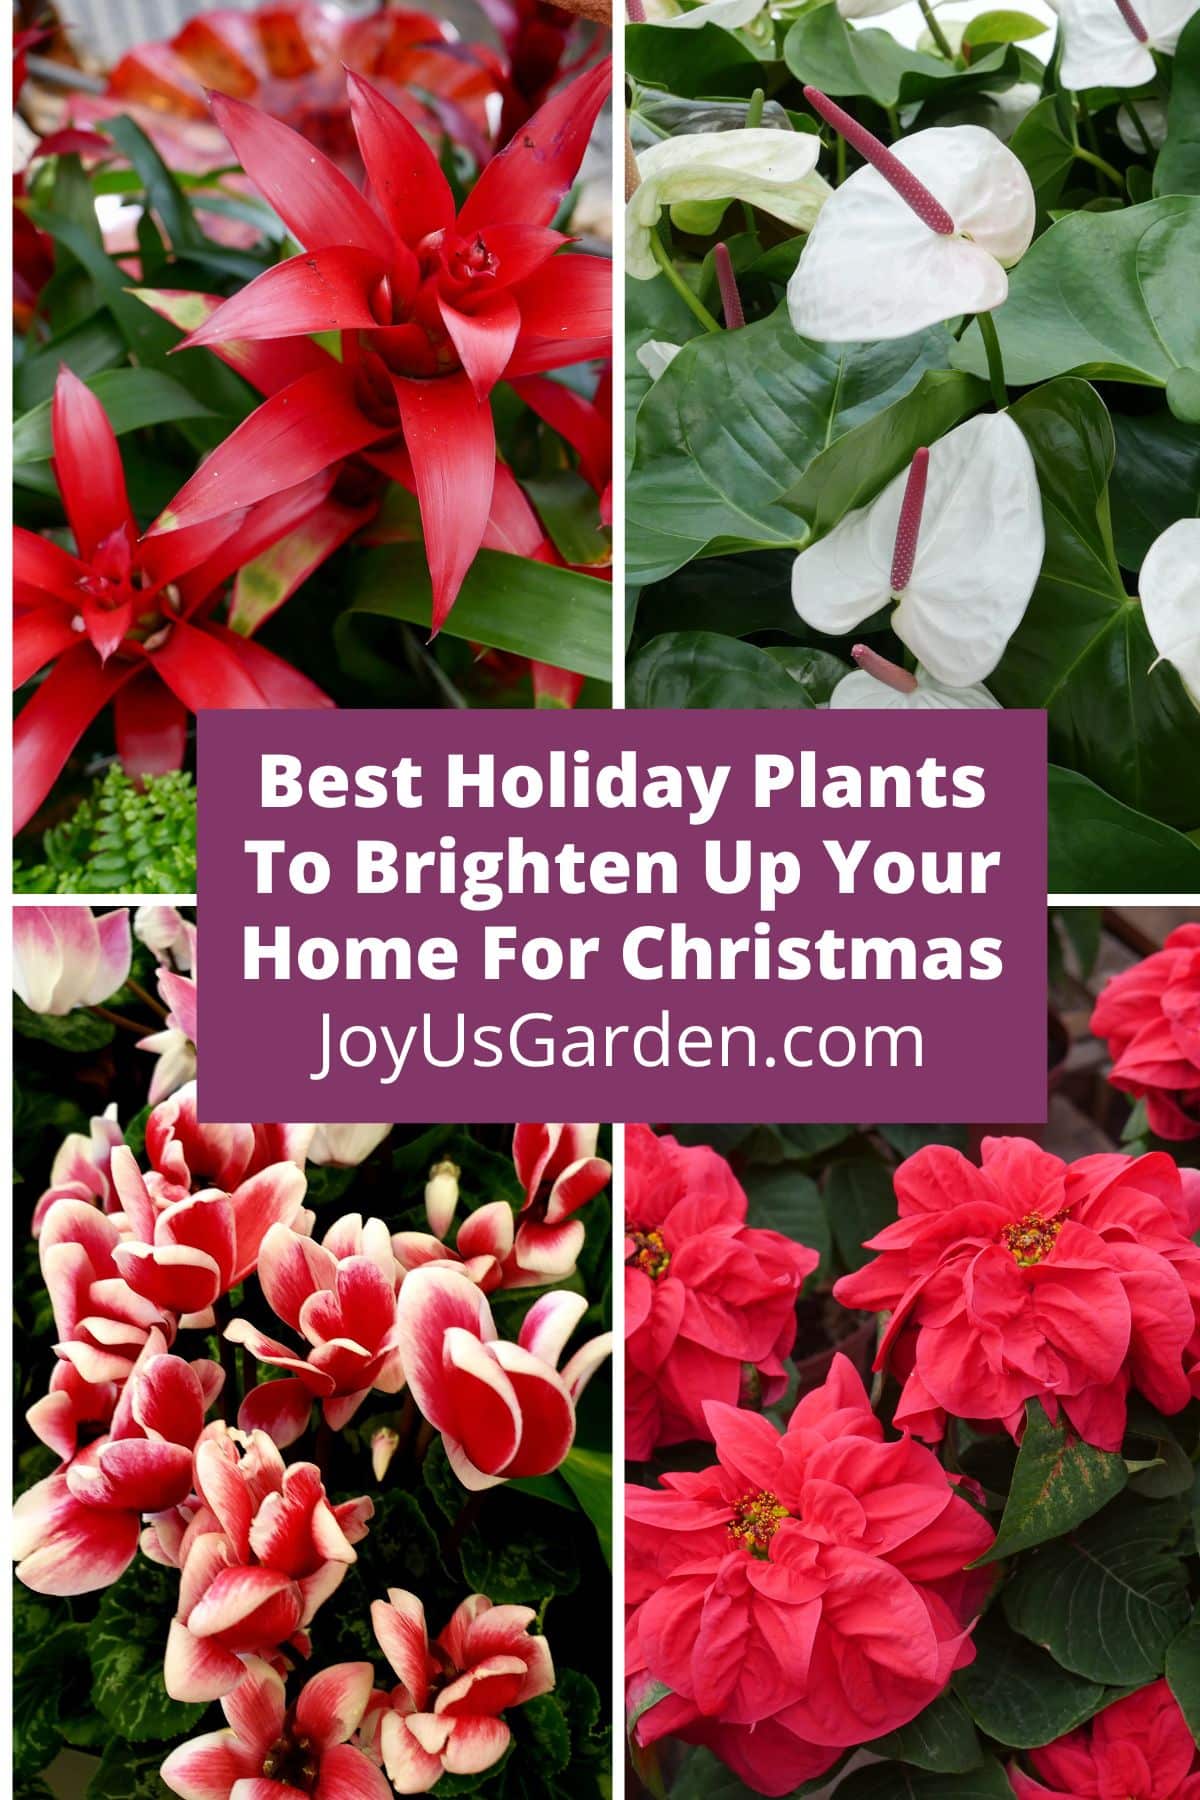  12 najlepších sviatočných rastlín, ktoré rozžiaria váš domov na Vianoce